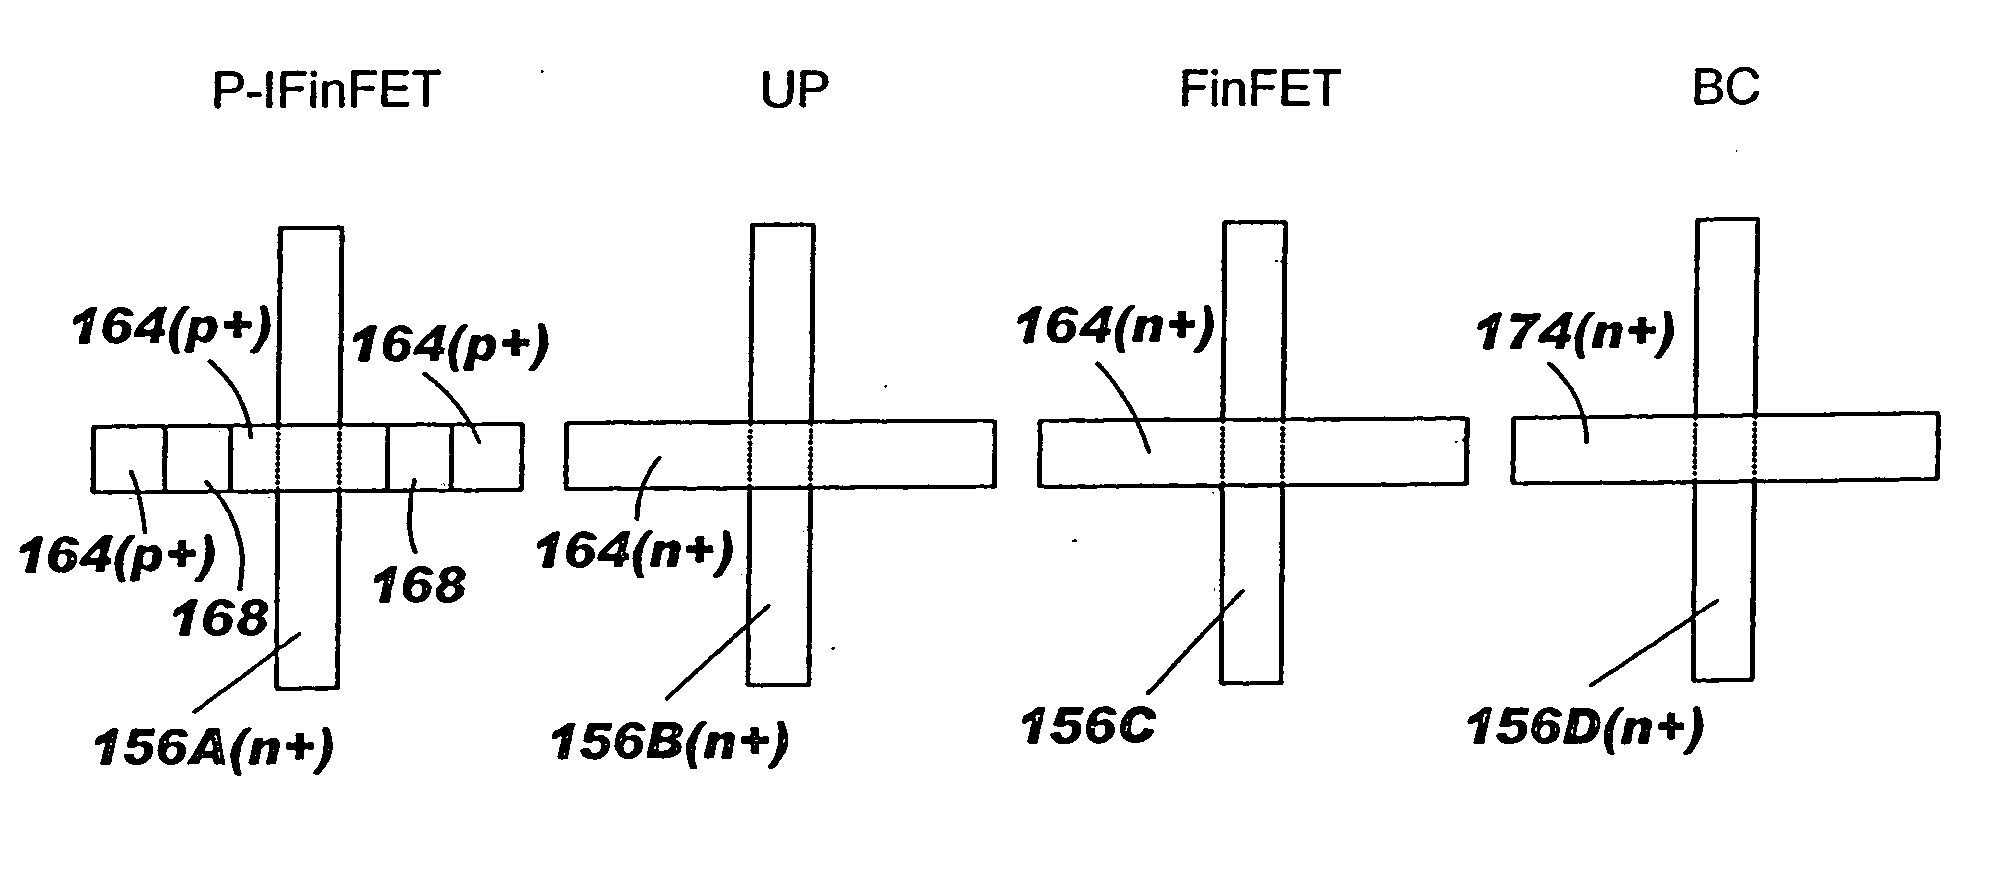 Finfet sram cell using inverted finfet thin film transistors